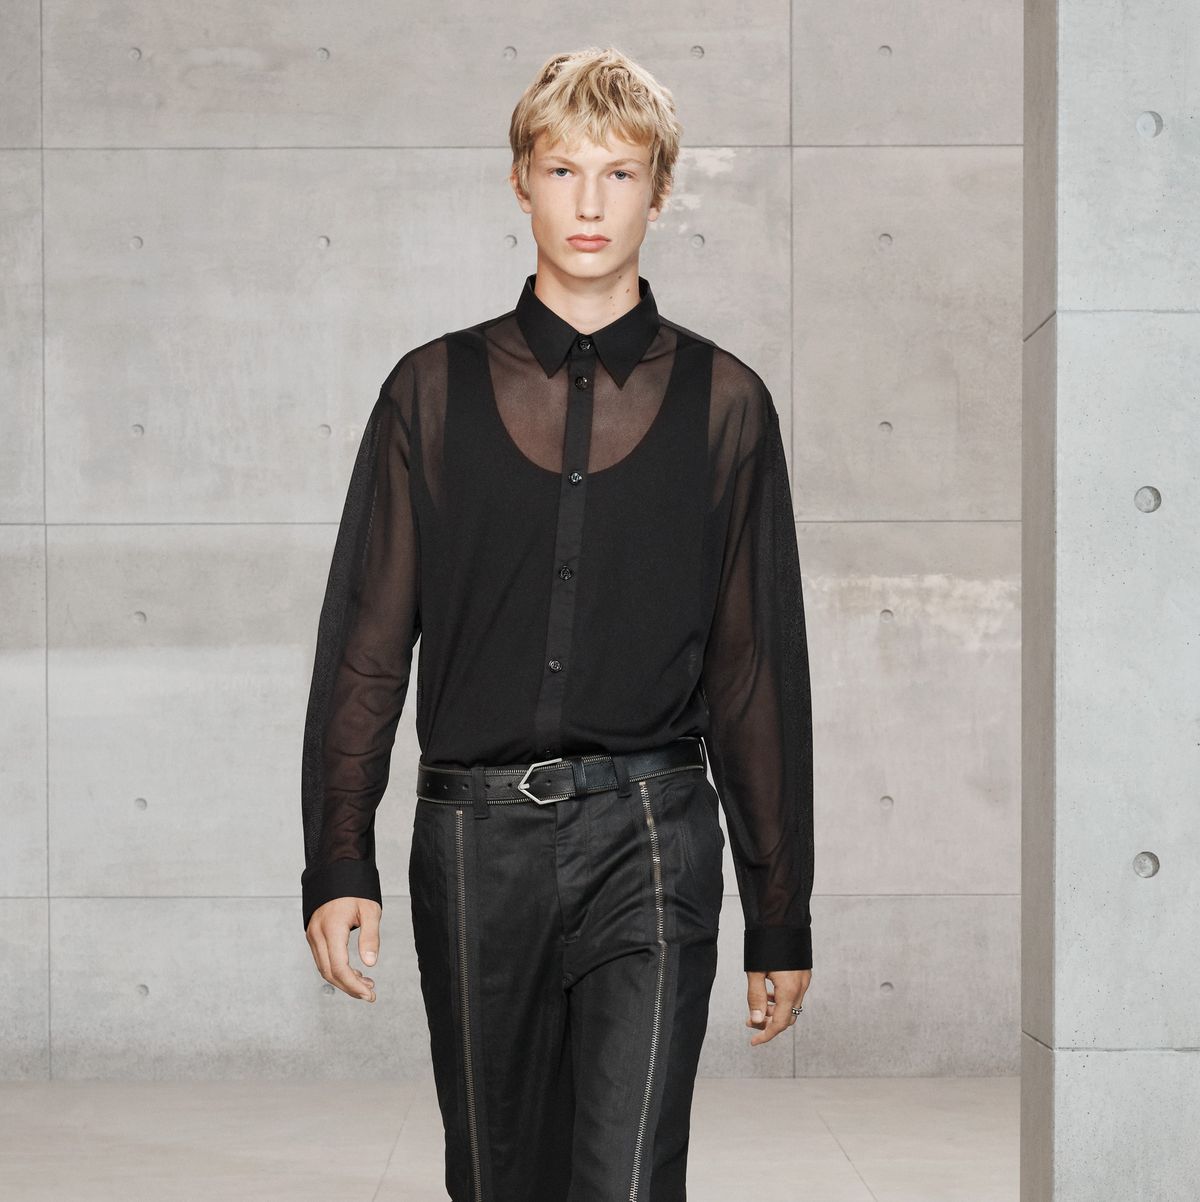 Zara SRPLS la camisa negra con transparencias